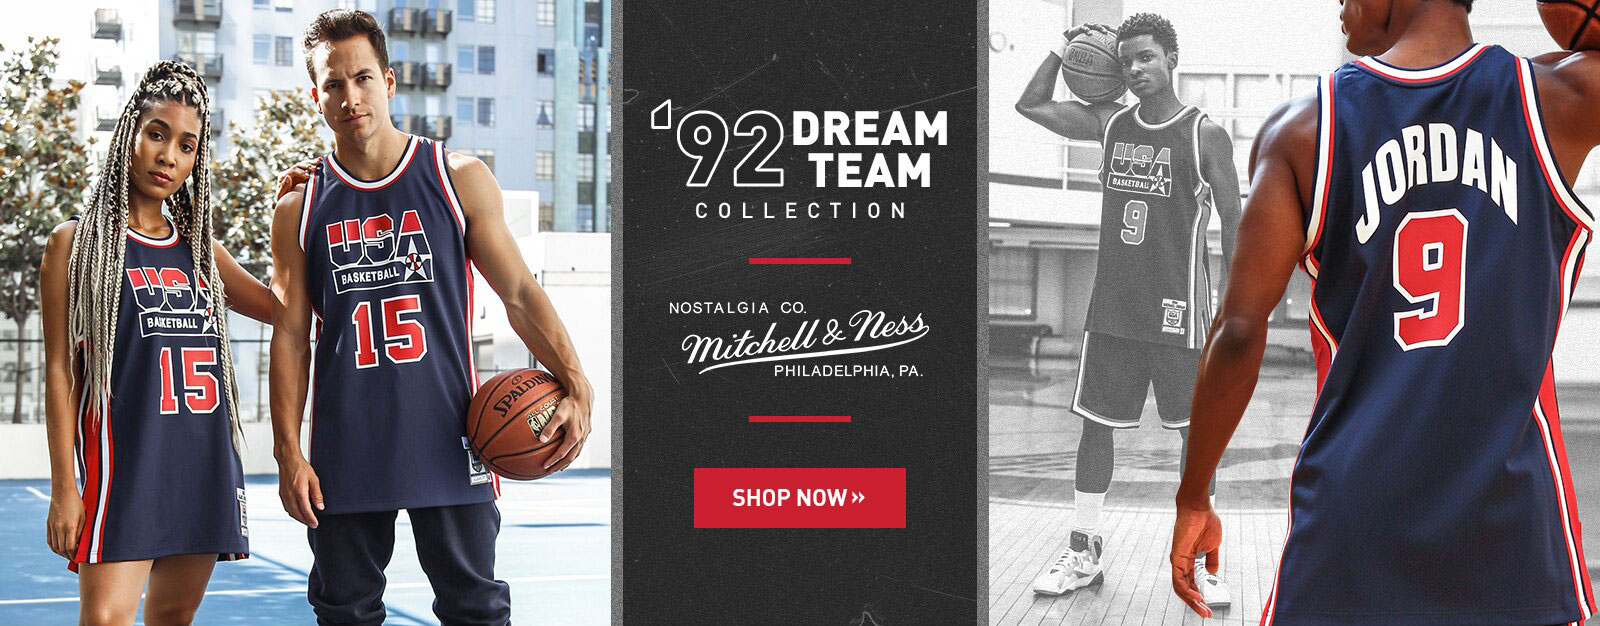 1992-nba-dream-team-basketball-collection